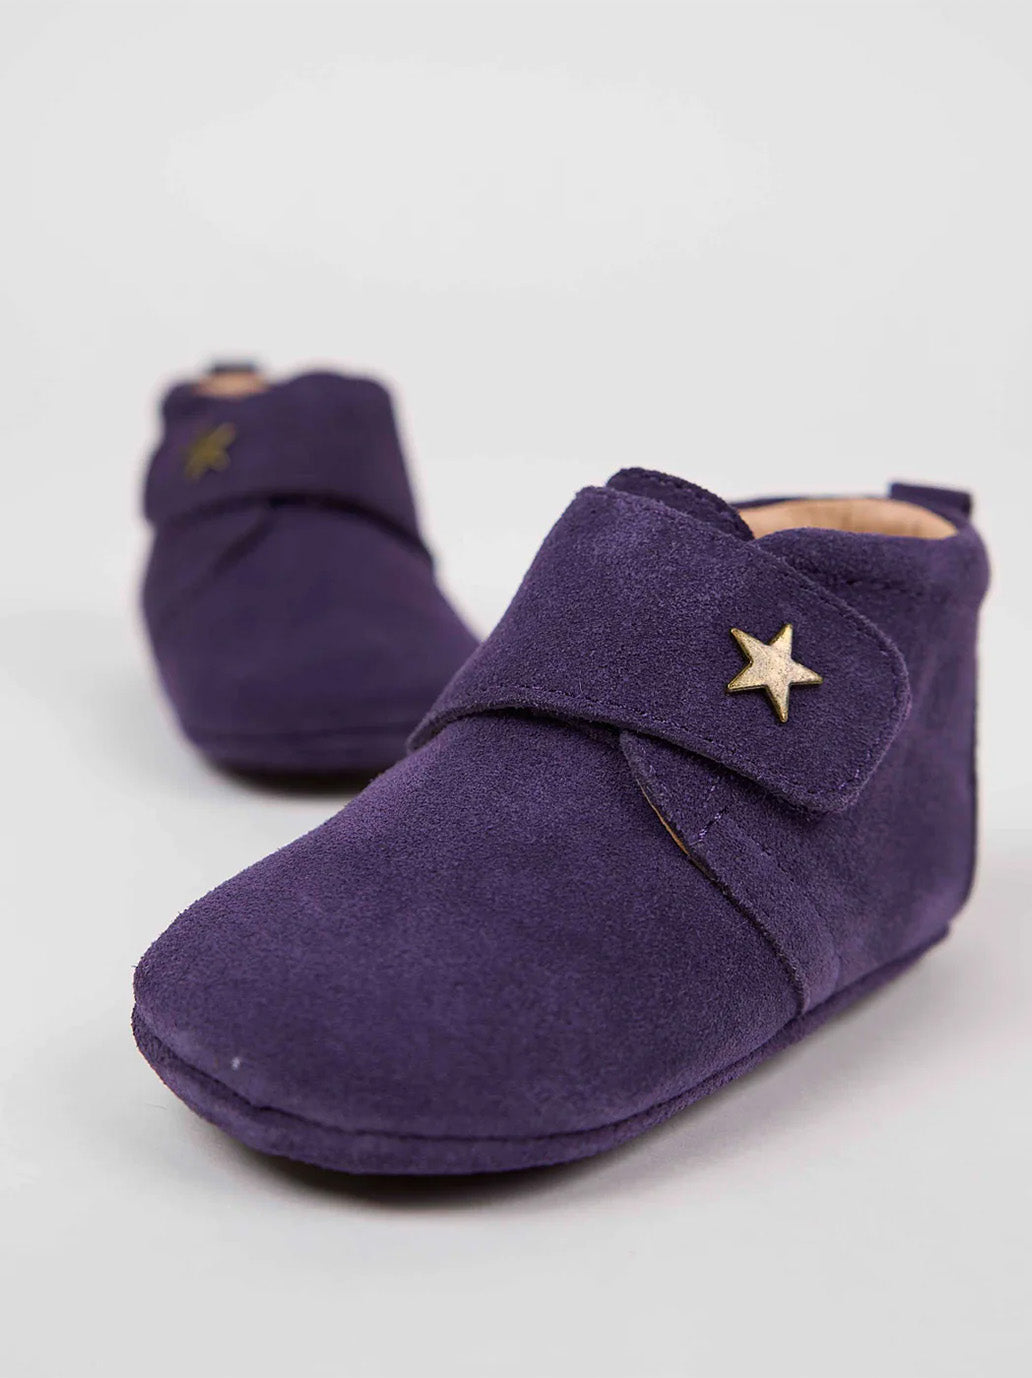 Premières chaussures bébé Star